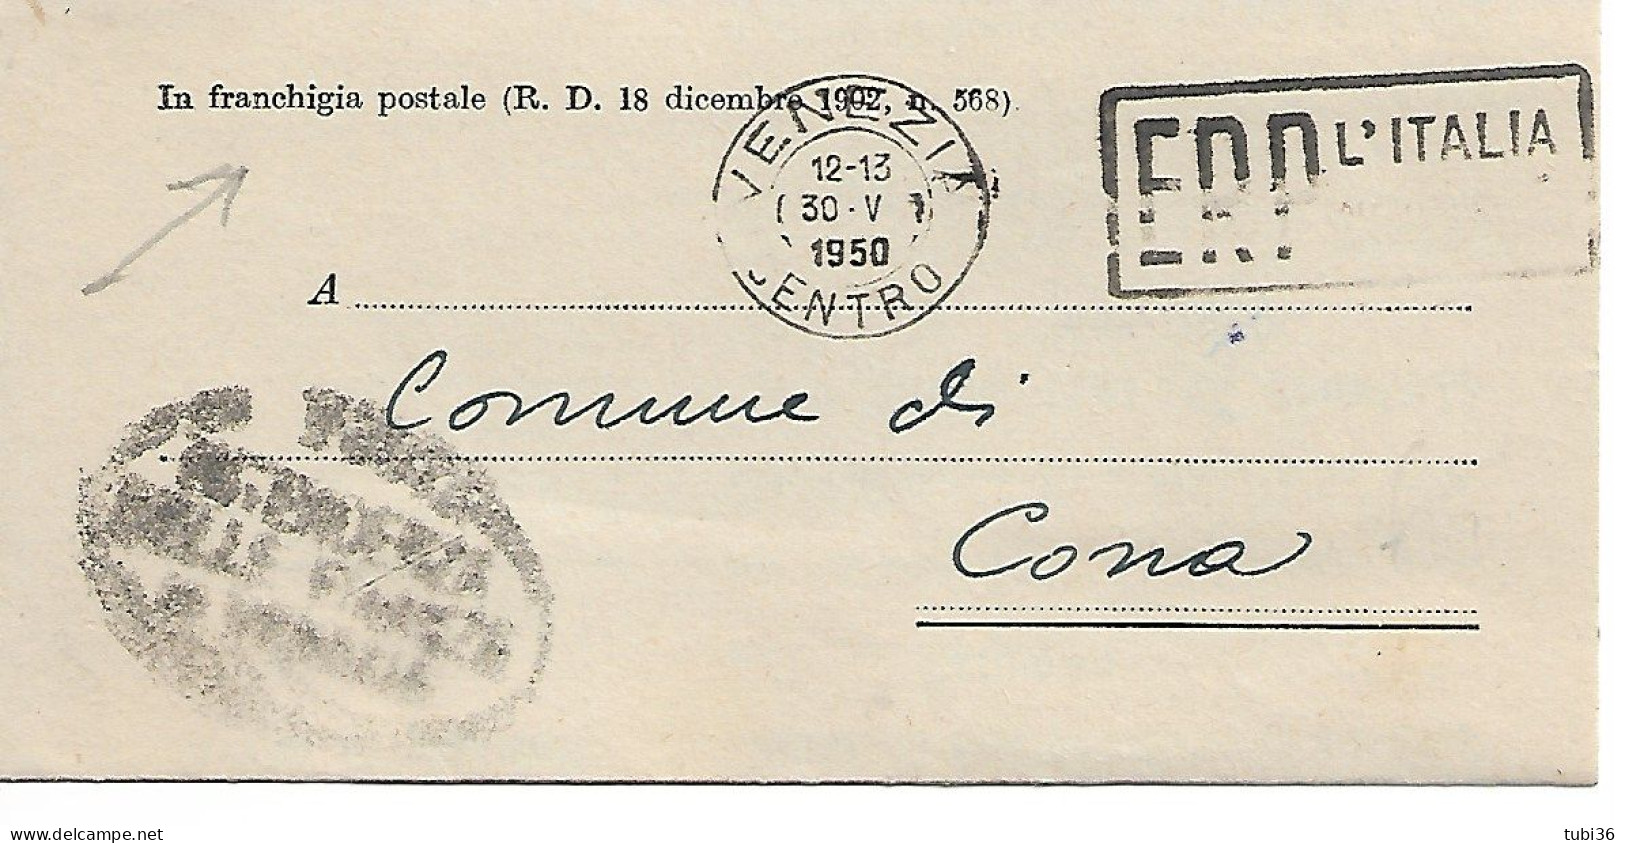 STORIA POSTALE - IN FRANCHIGIA POSTALE (R.D. 18 DICEMBRE 1902 N.568) VIAGGIATO 1950 - TIMBRO POSTE VENEZIA - TARGHETTA - Poste